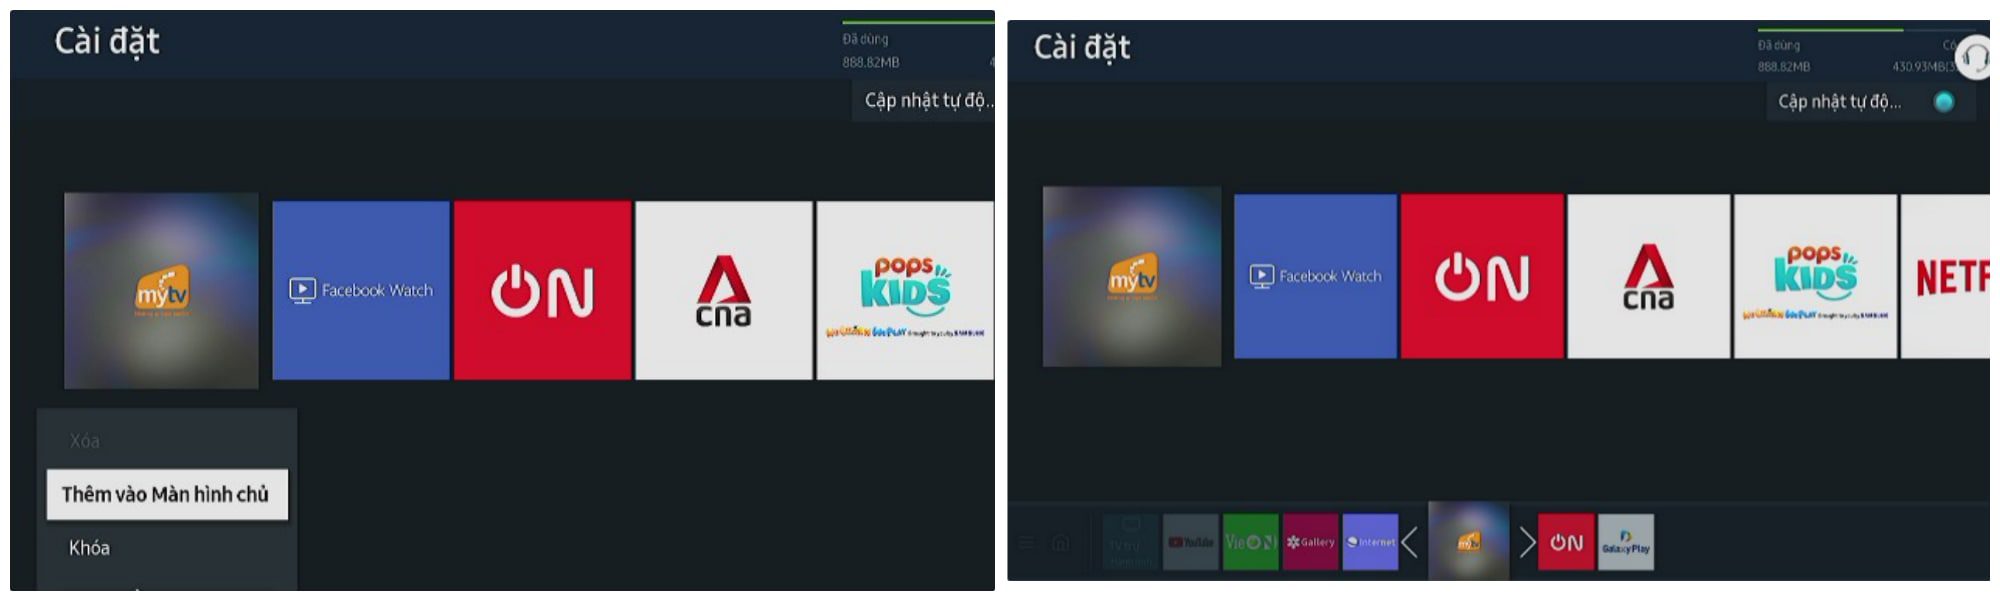 Hướng dẫn cách thêm app/ứng dụng vào màn hình chính tivi Samsung